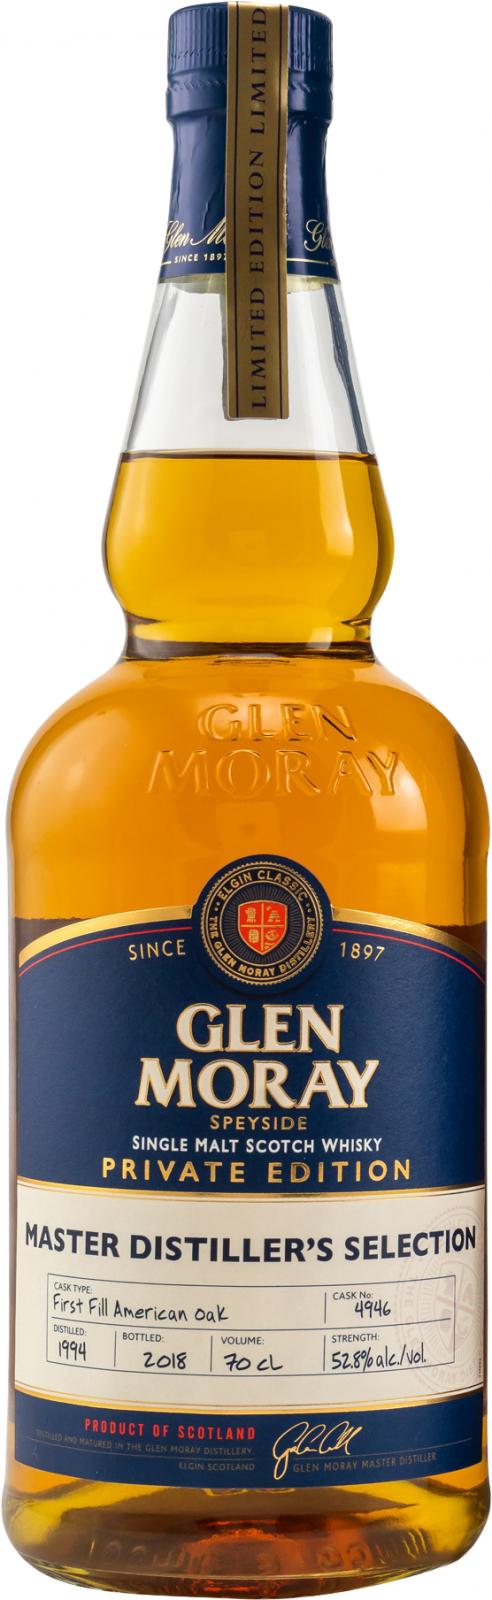 Glen Moray 1994 Private Edition